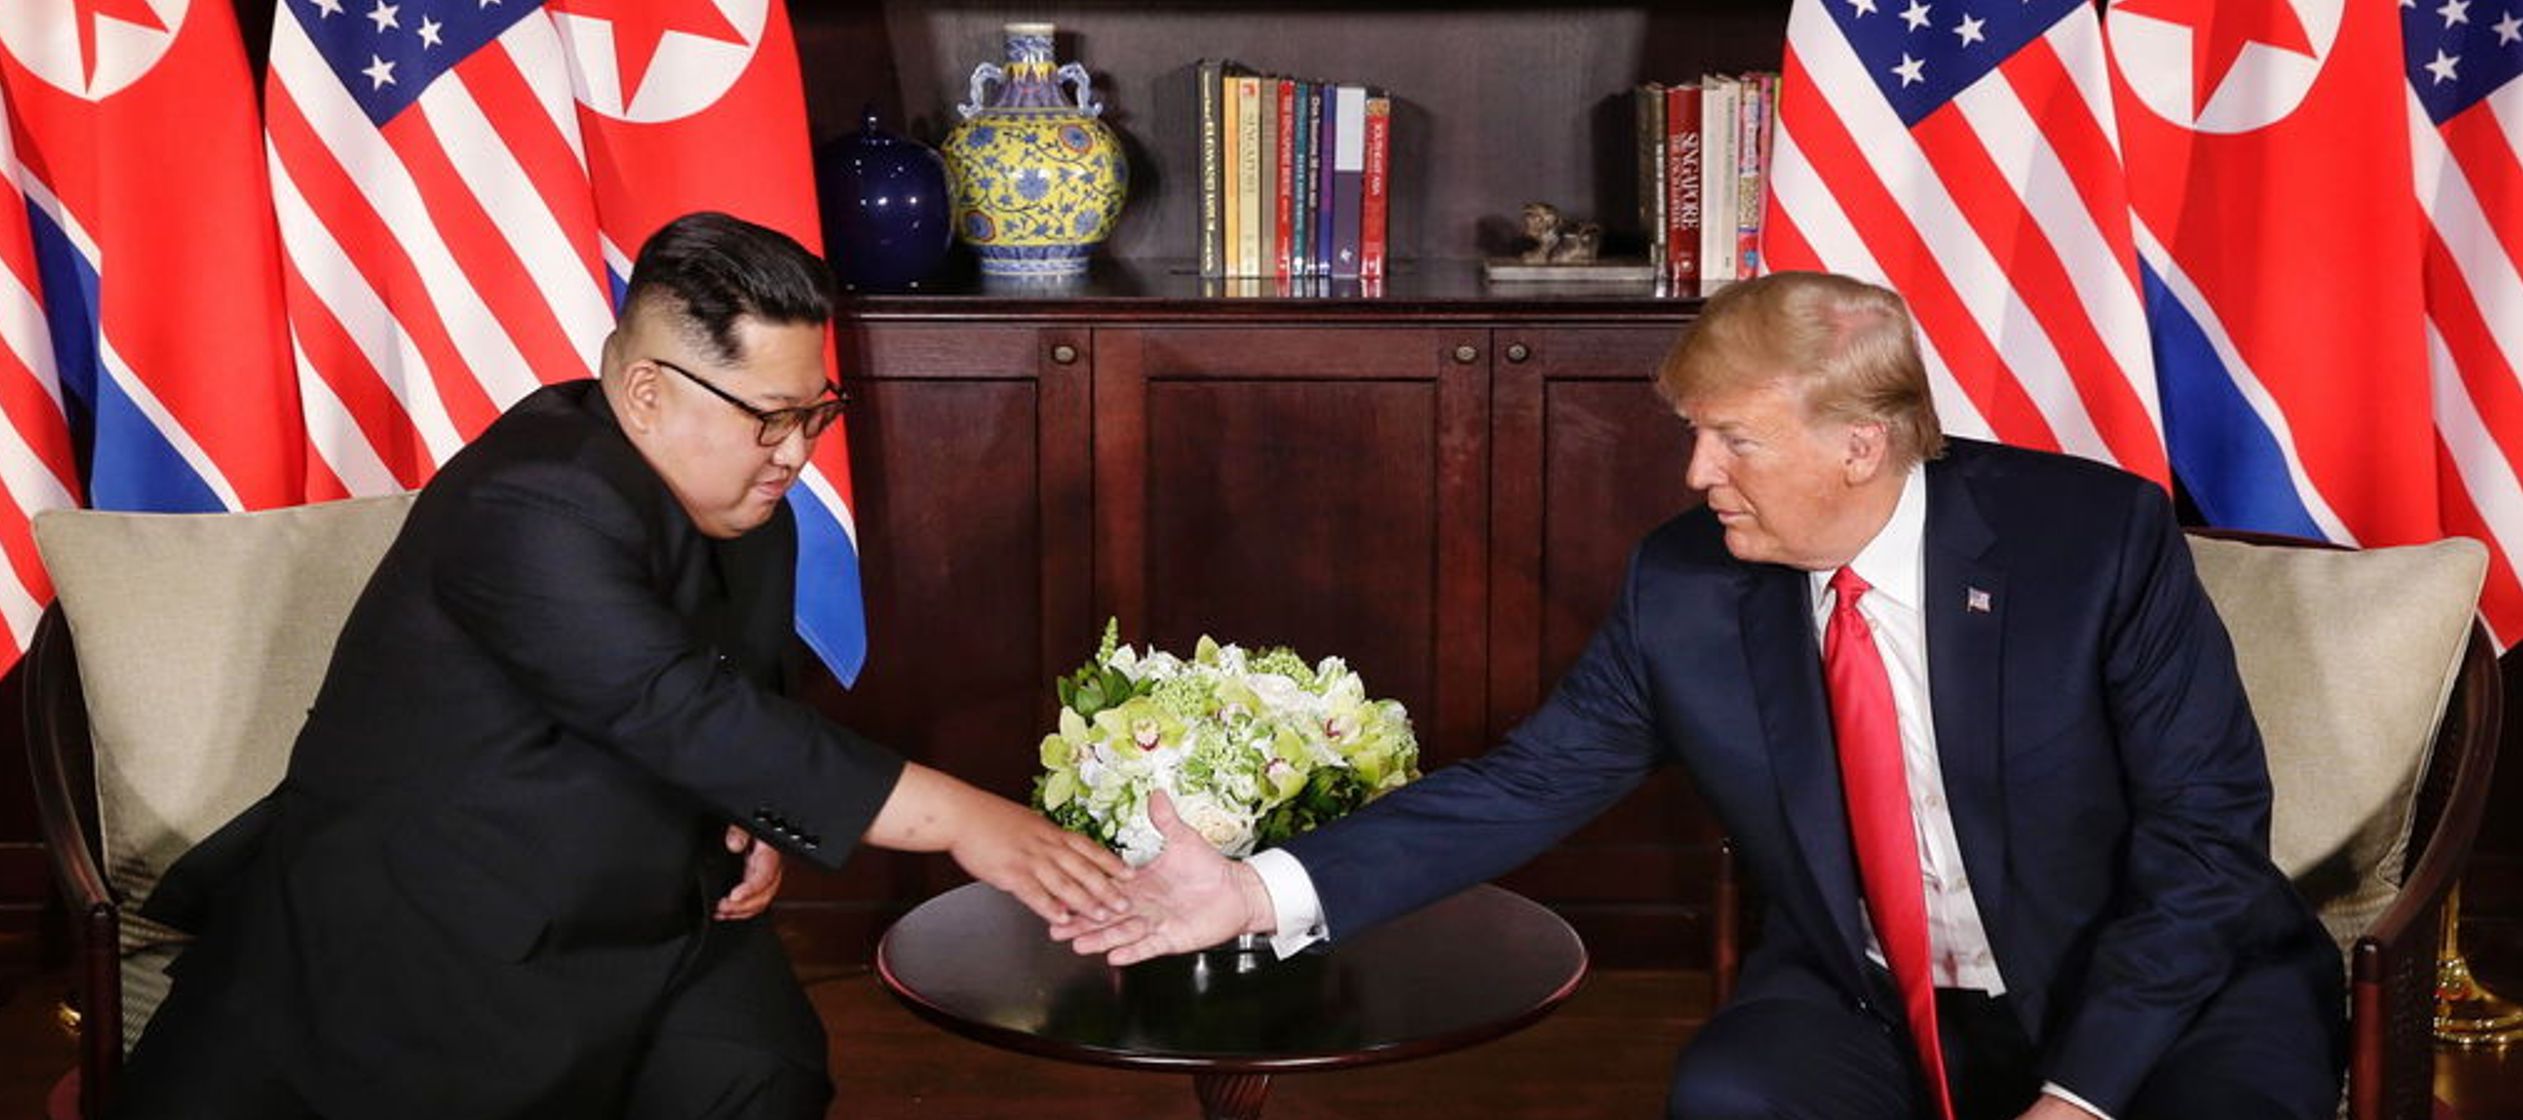 Kim "dejó muy claro su compromiso de desnuclearizar por completo su país. Eso es...